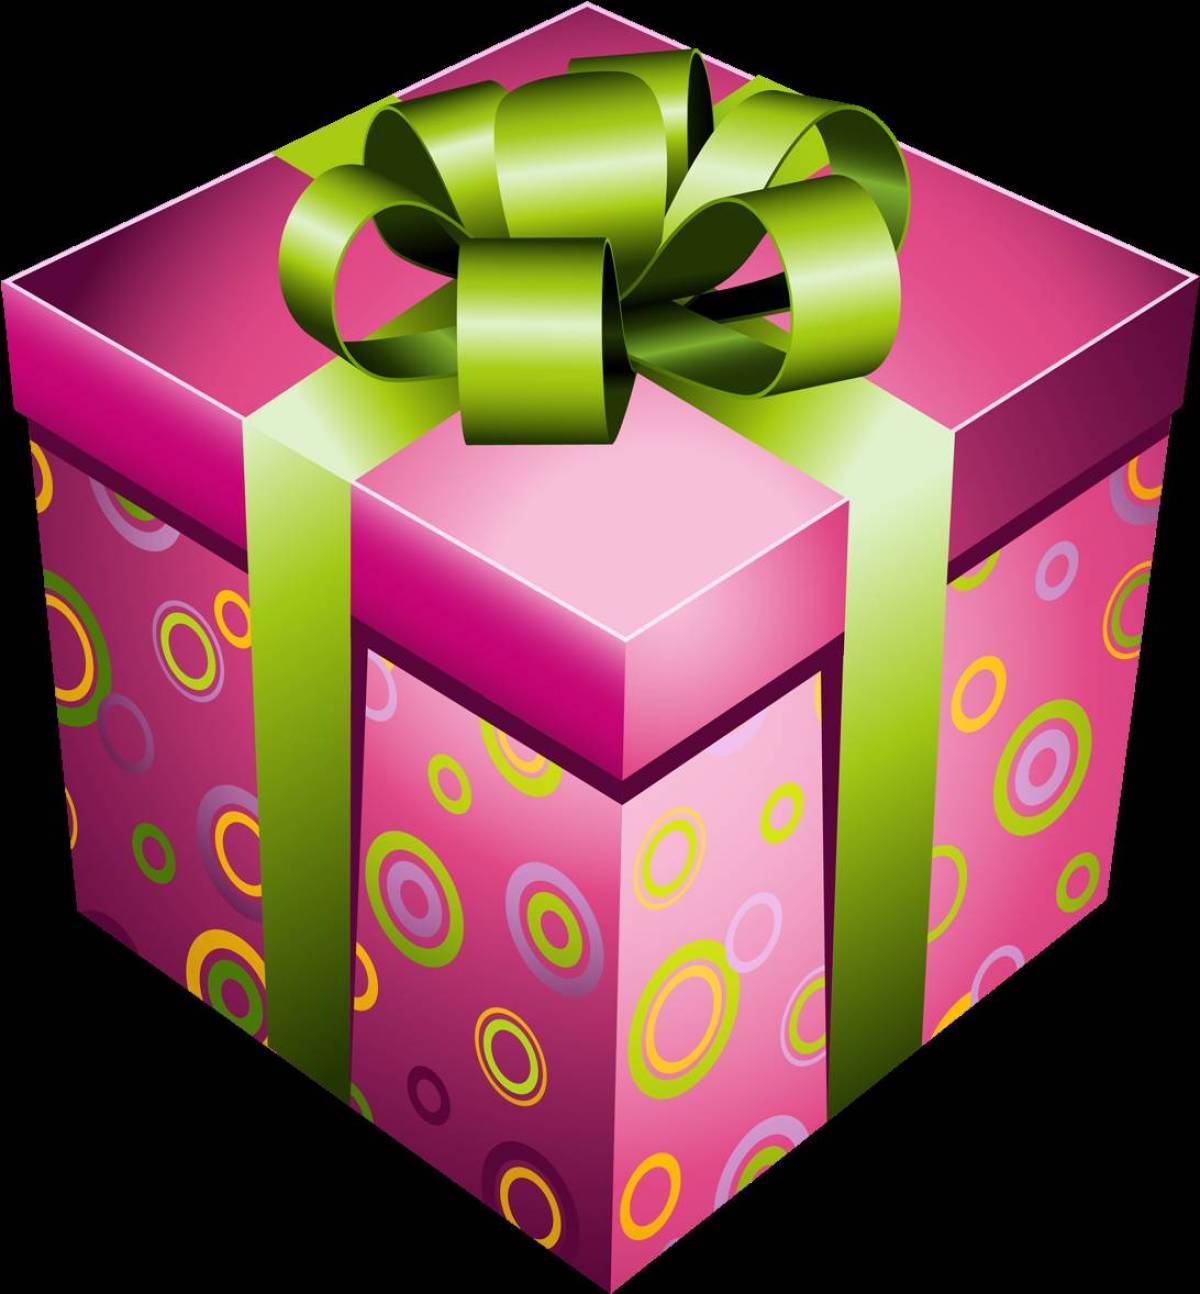 Подарки тг канал. 5 Подарков. Telegram Gift. Подарок тг бот. Картинка коробка ничего.